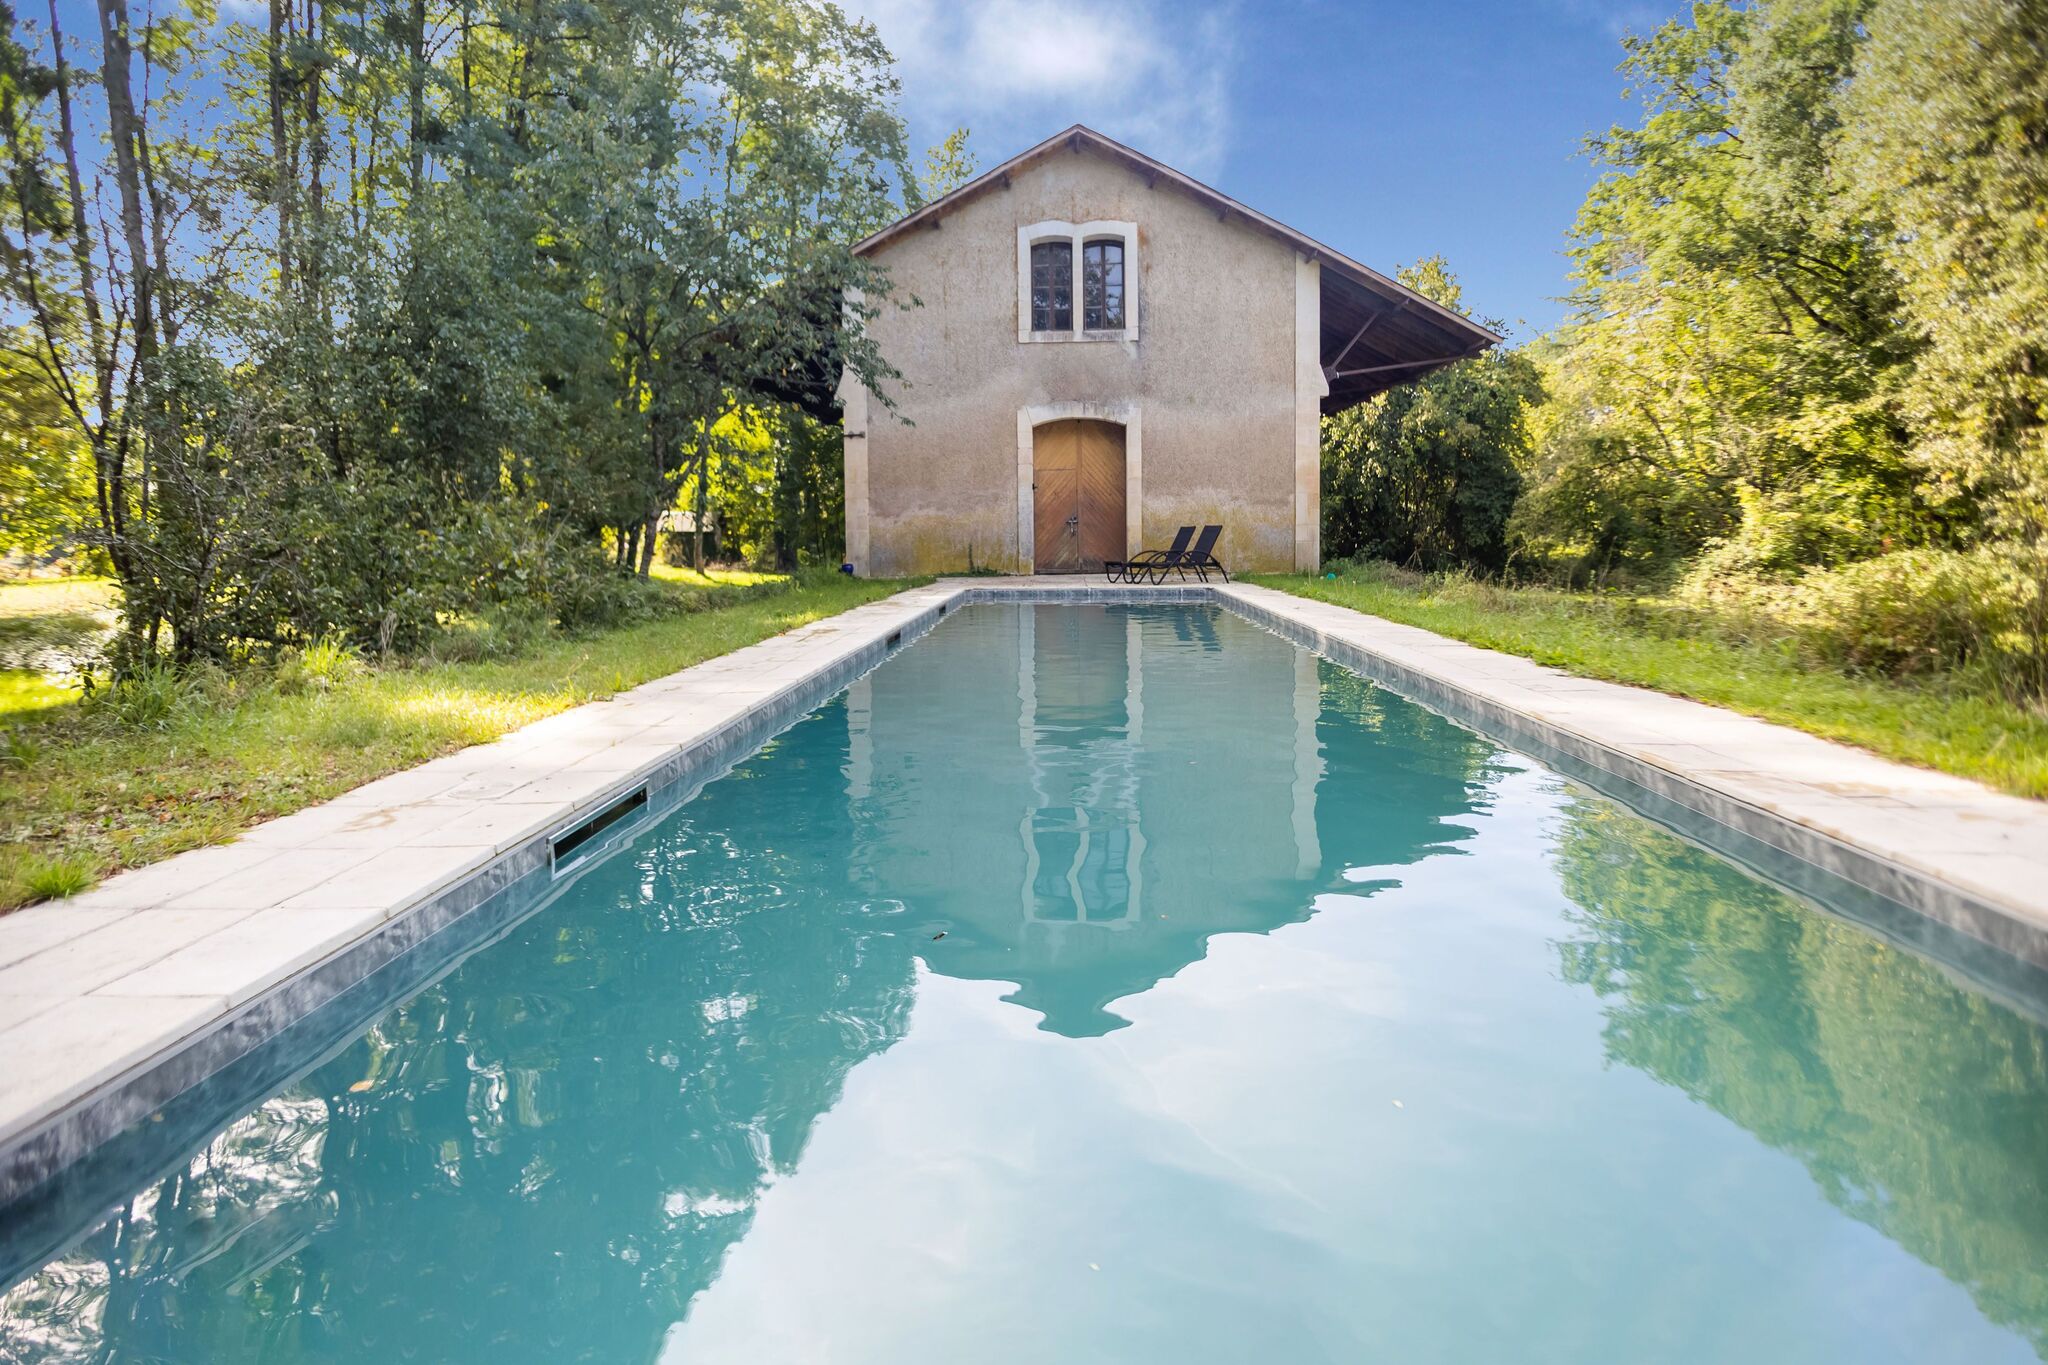 Demeure rustique à Liglet France avec piscine